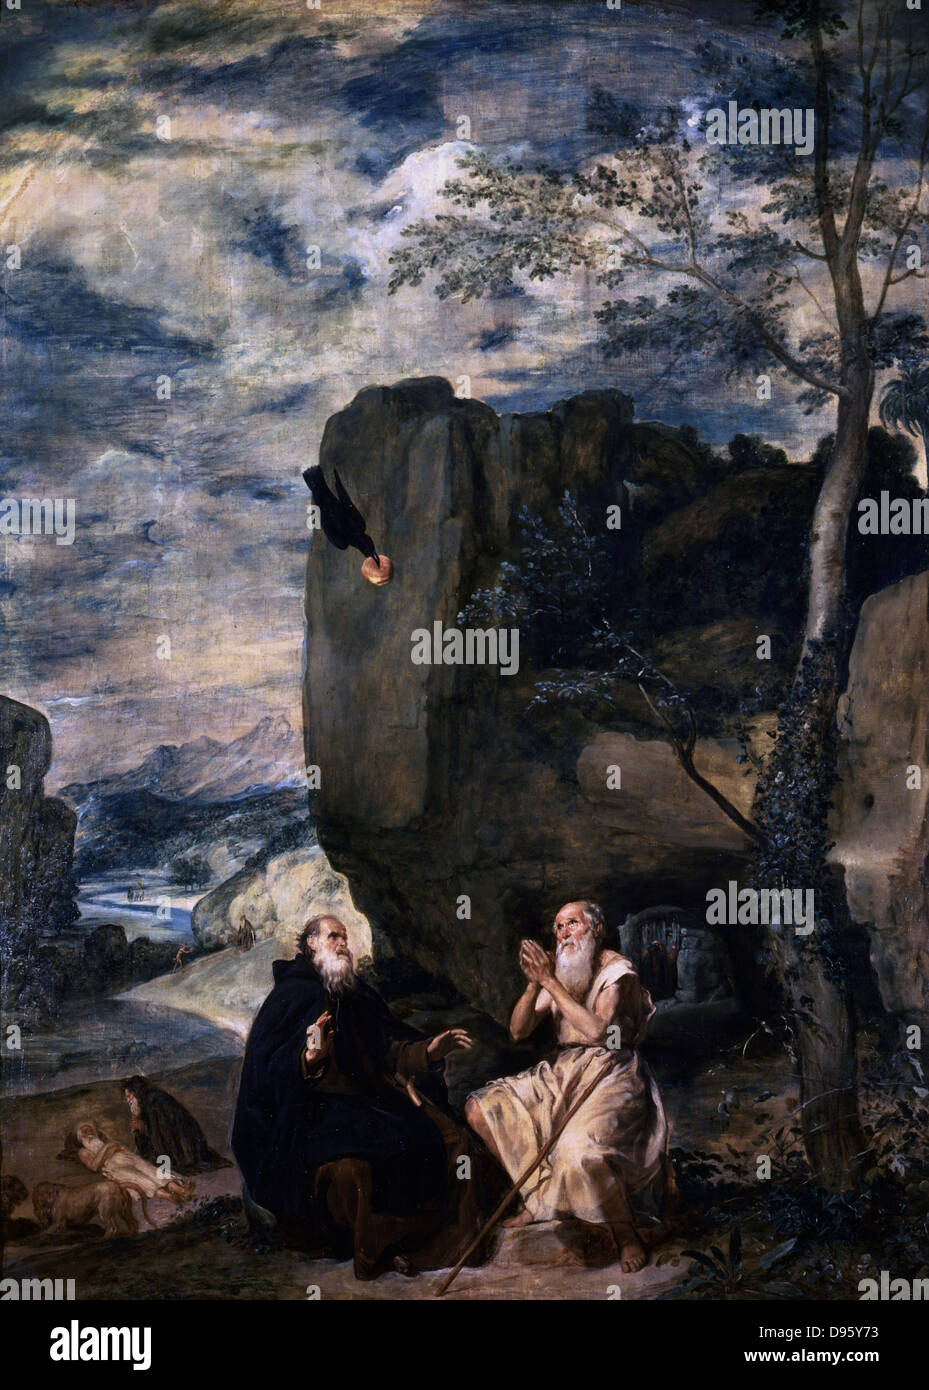 St Antoine et St Paul dans le désert d'être nourri par un corbeau. 1645. Diego Velasquez (1599-1660) l'artiste espagnol. Prado, Madrid. Banque D'Images